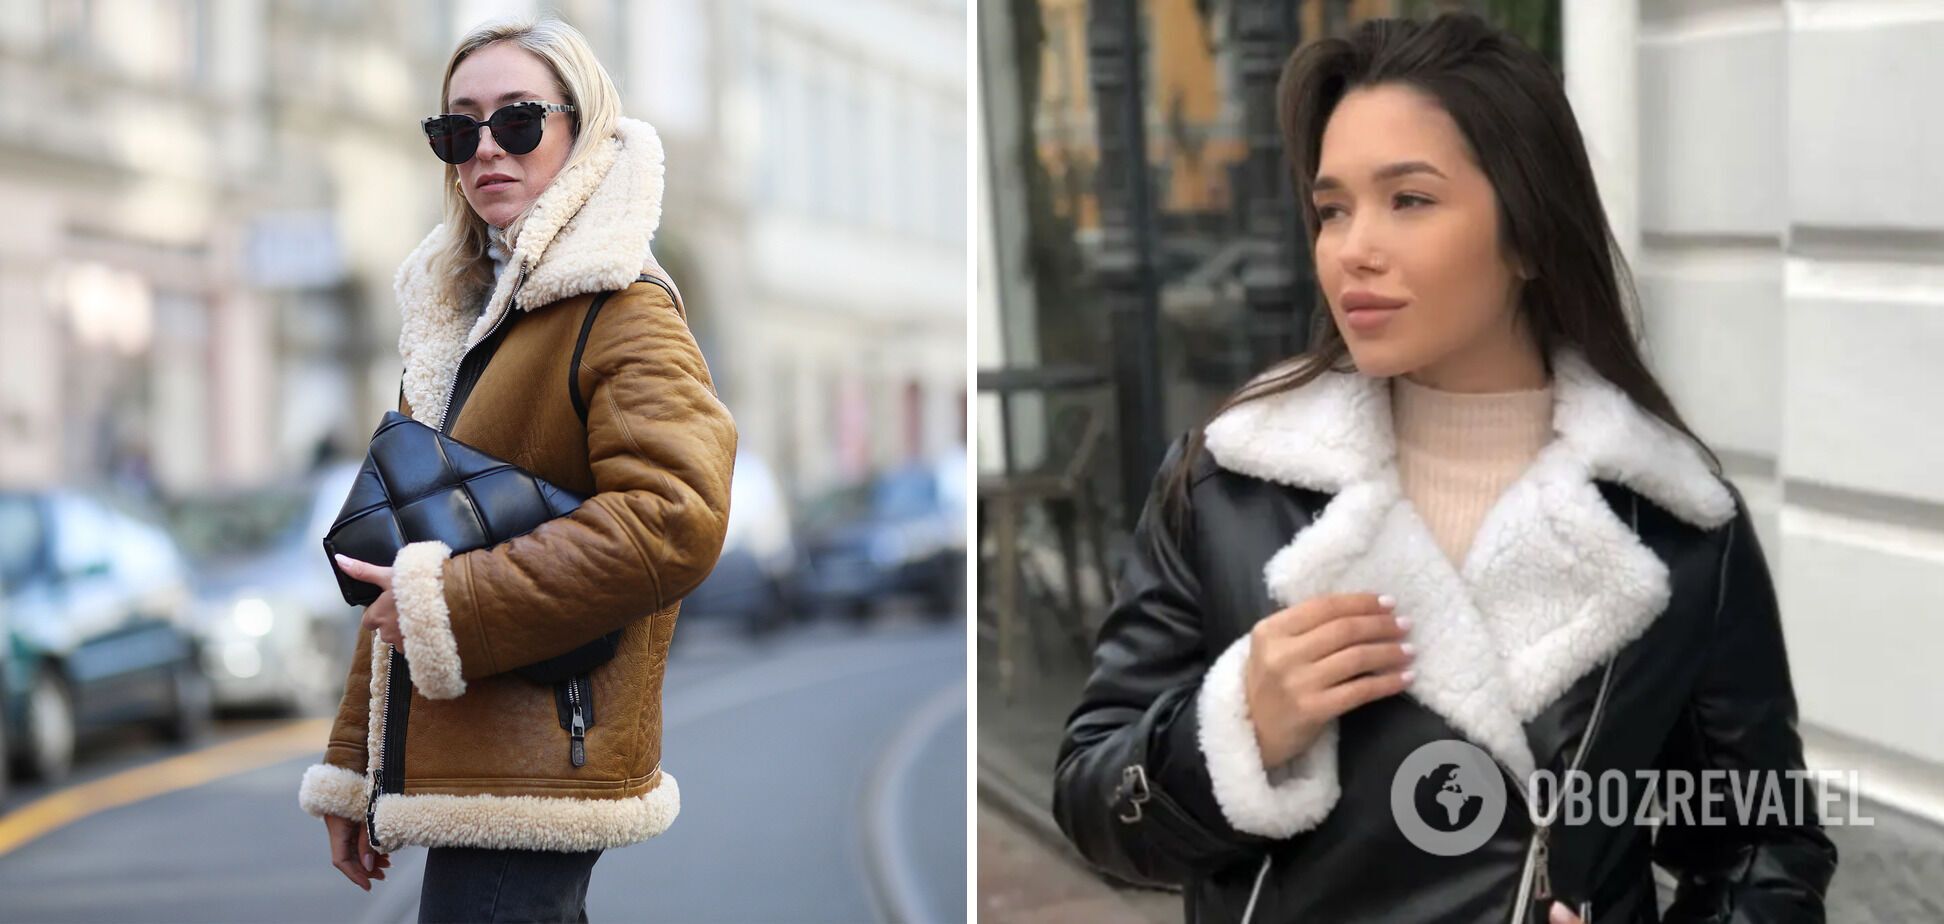 Sheepskin coats are no longer in fashion.